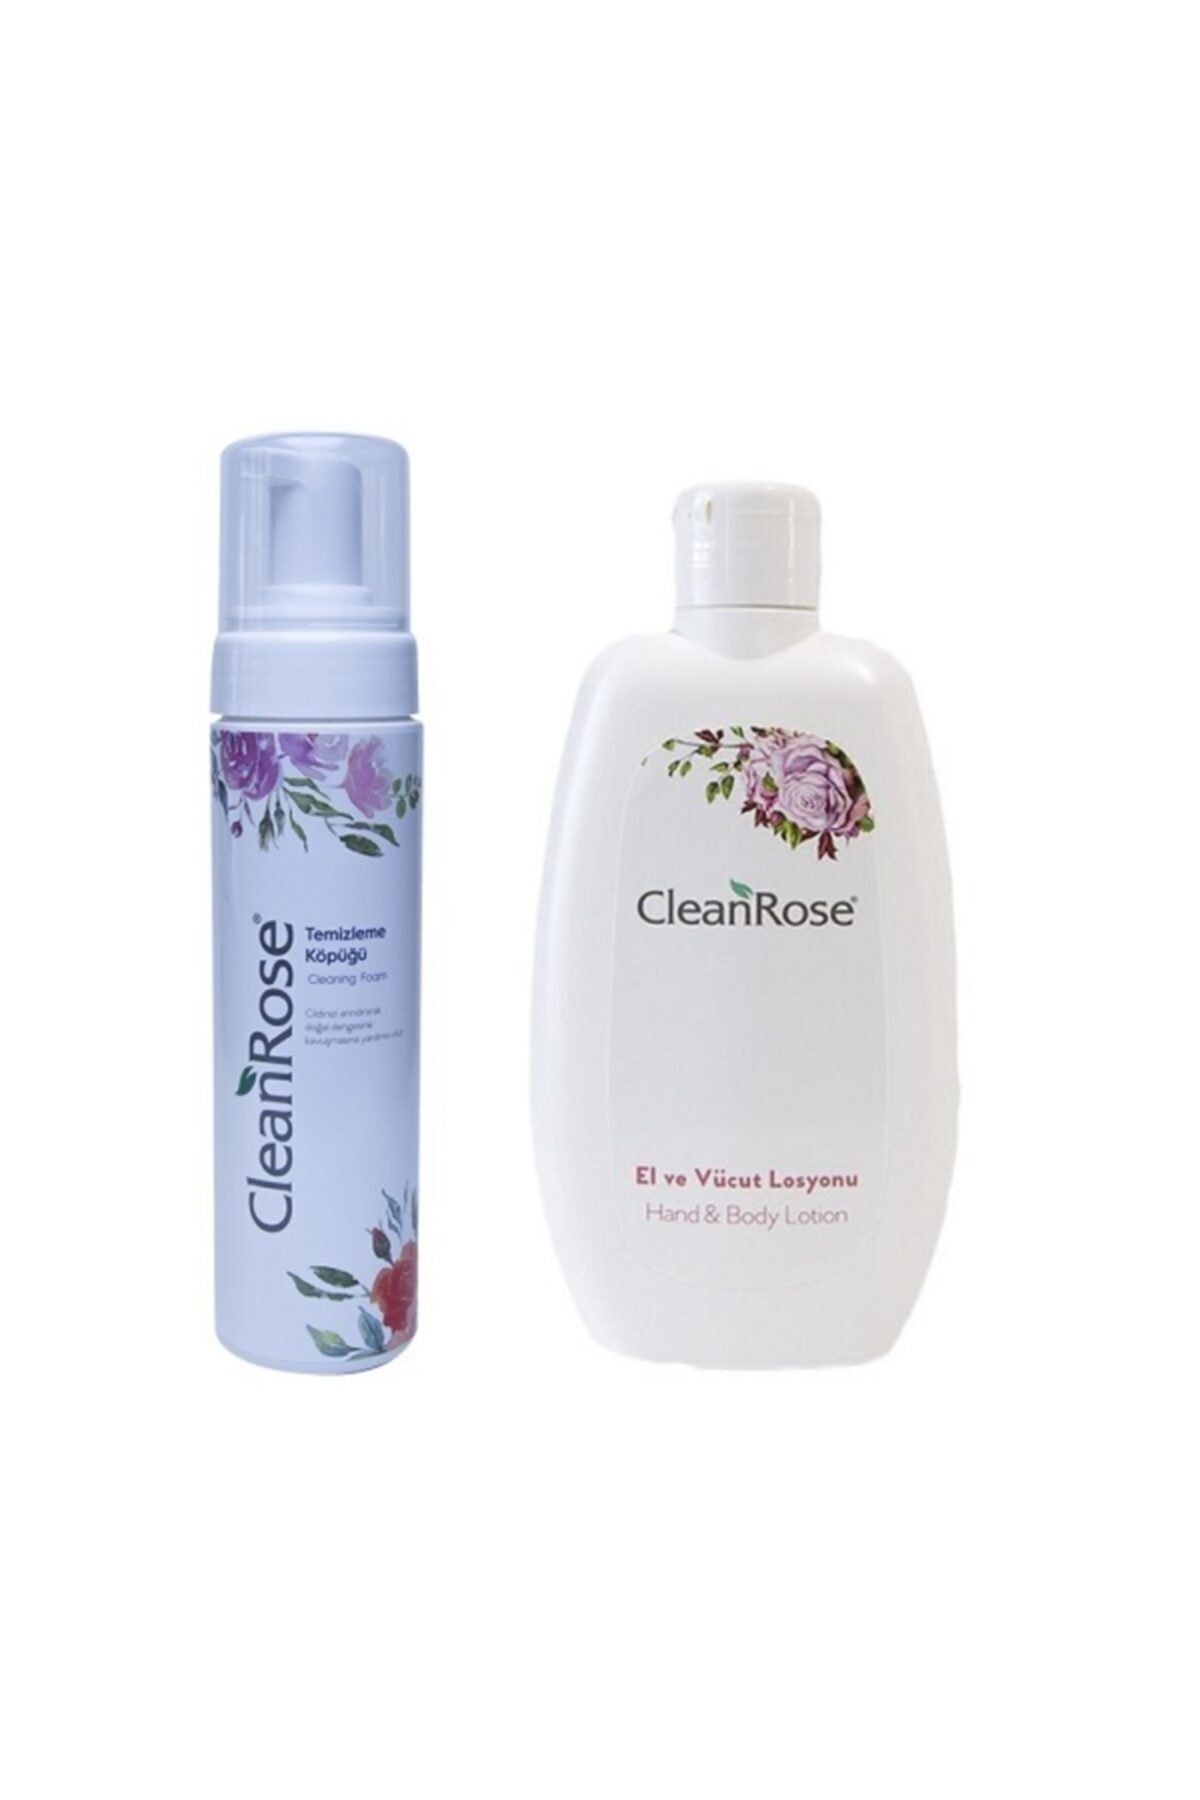 Clean Rose Cleanrose El ve Vücut Losyonu 200 ml Doğal Temizleme Köpüğü 200 ml